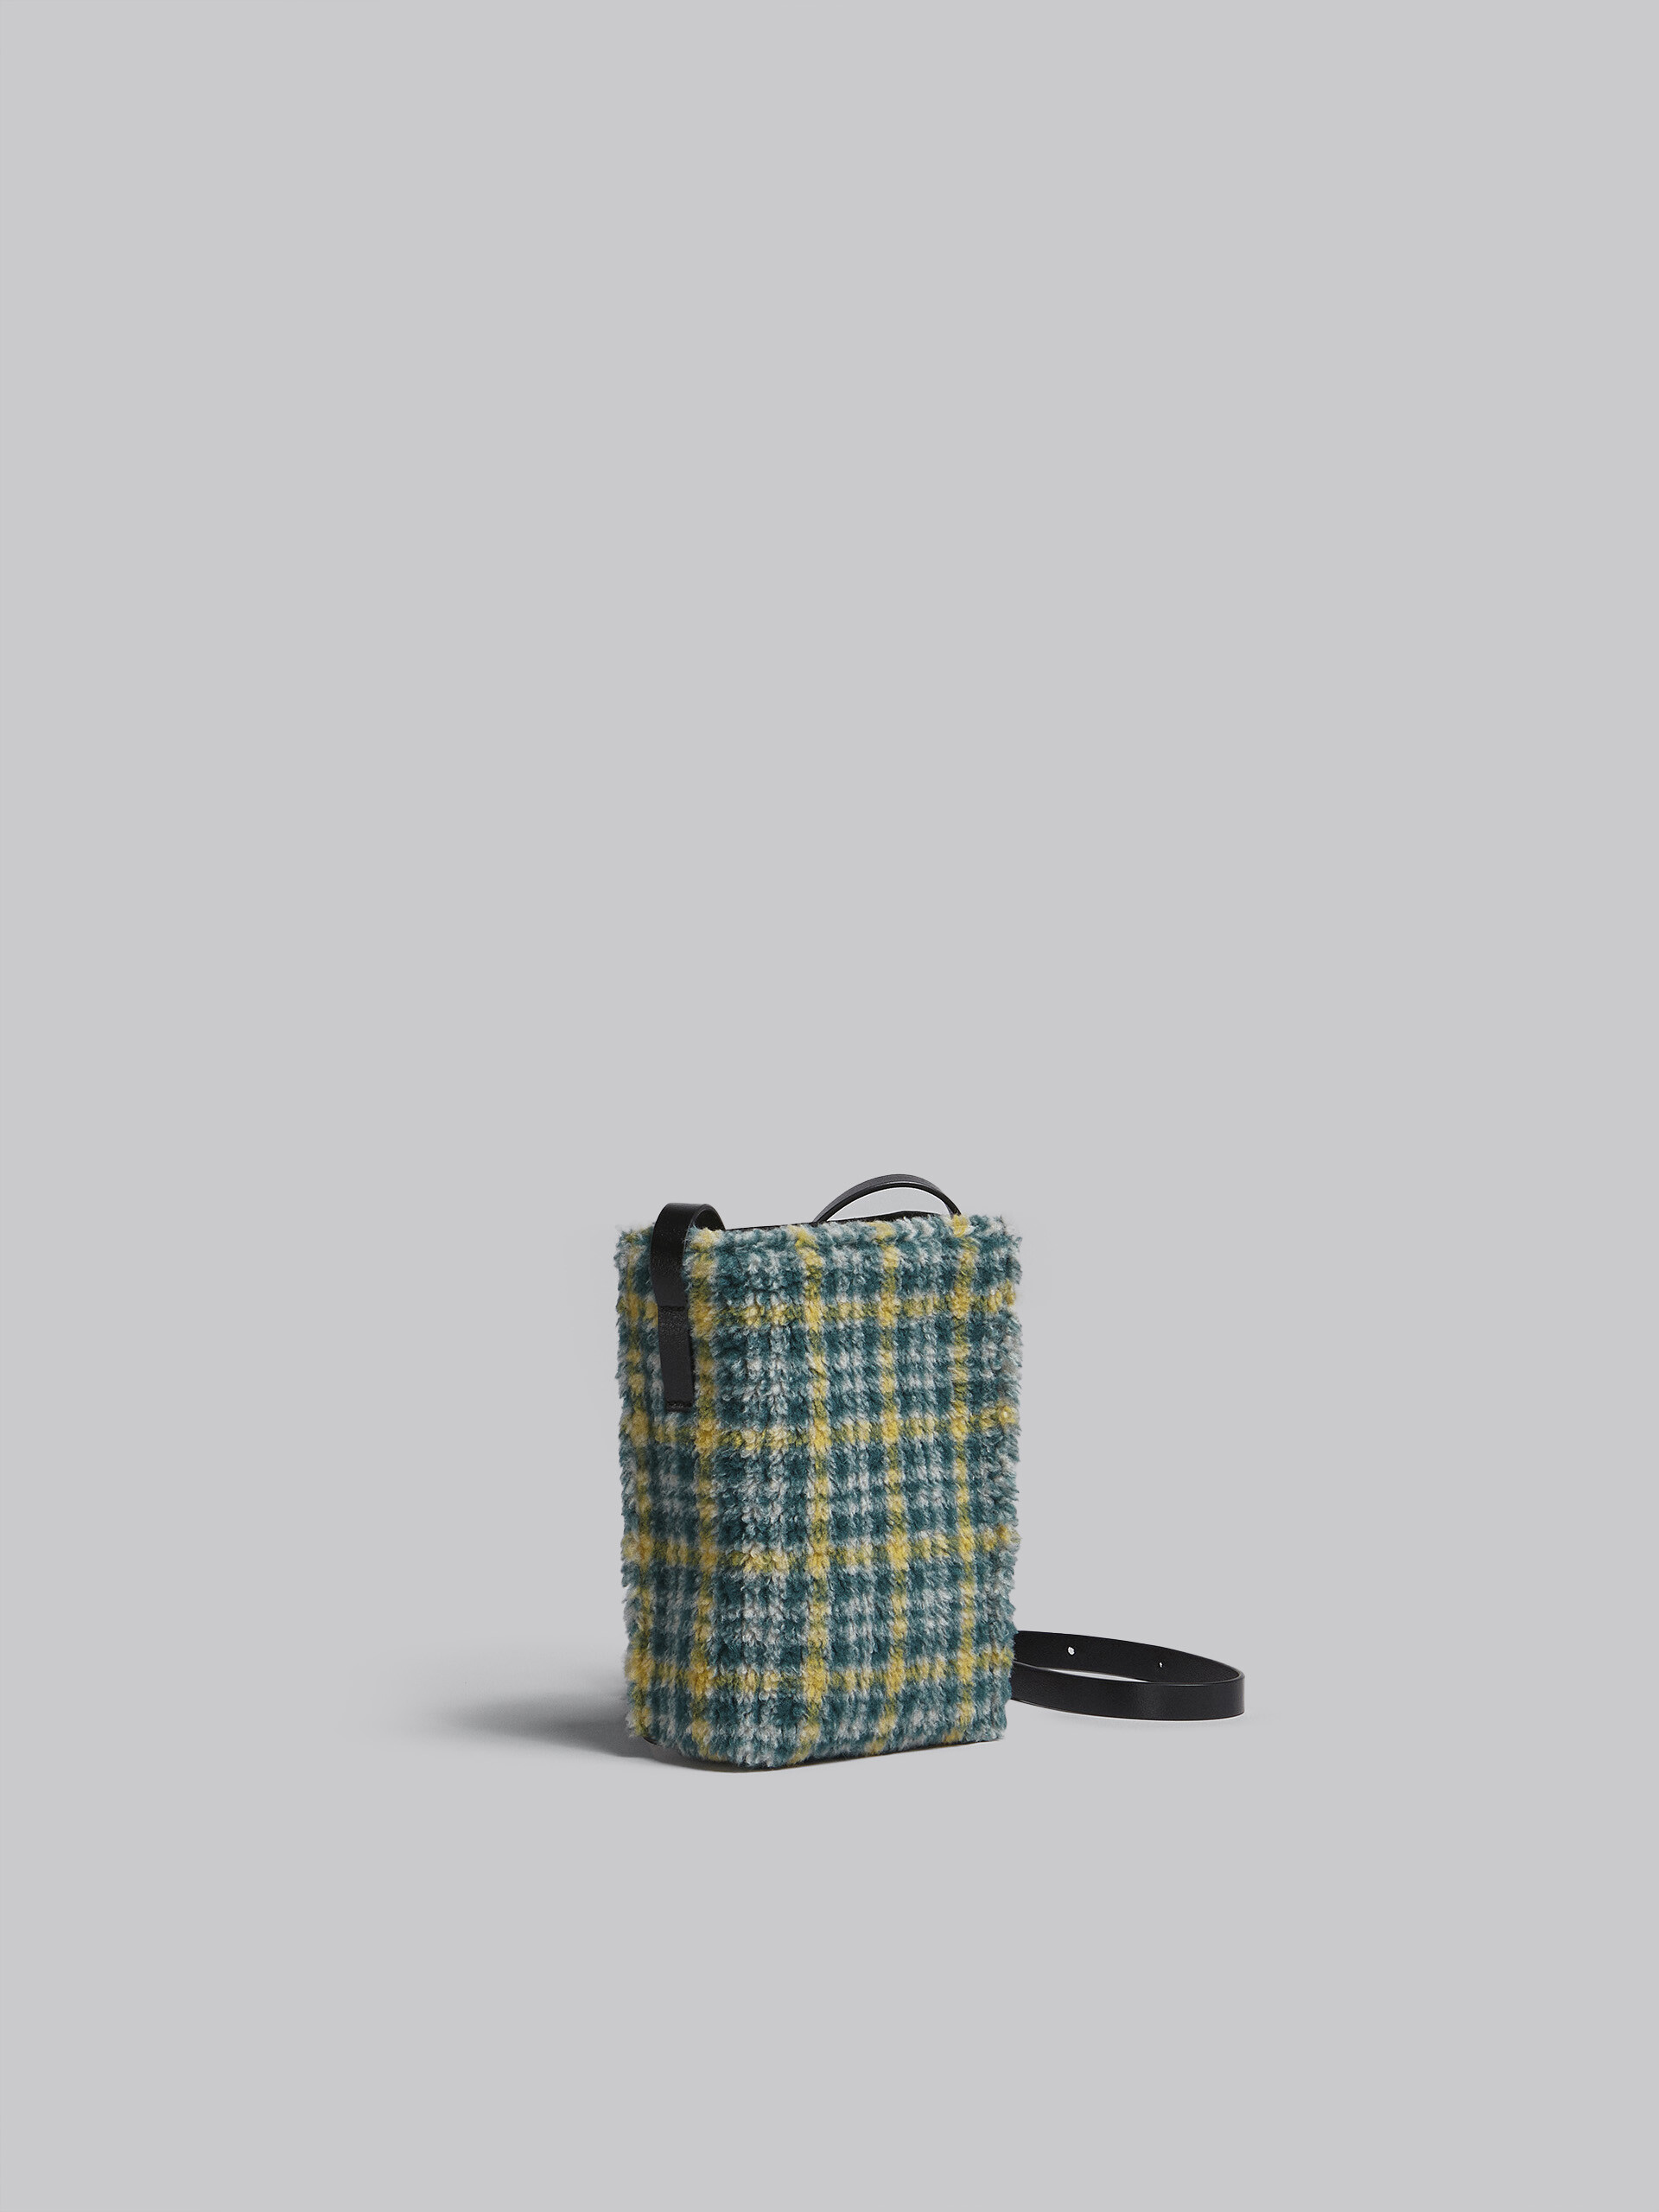 MUSEO SOFT bag piccola in tessuto check verde - Borse a spalla - Image 6